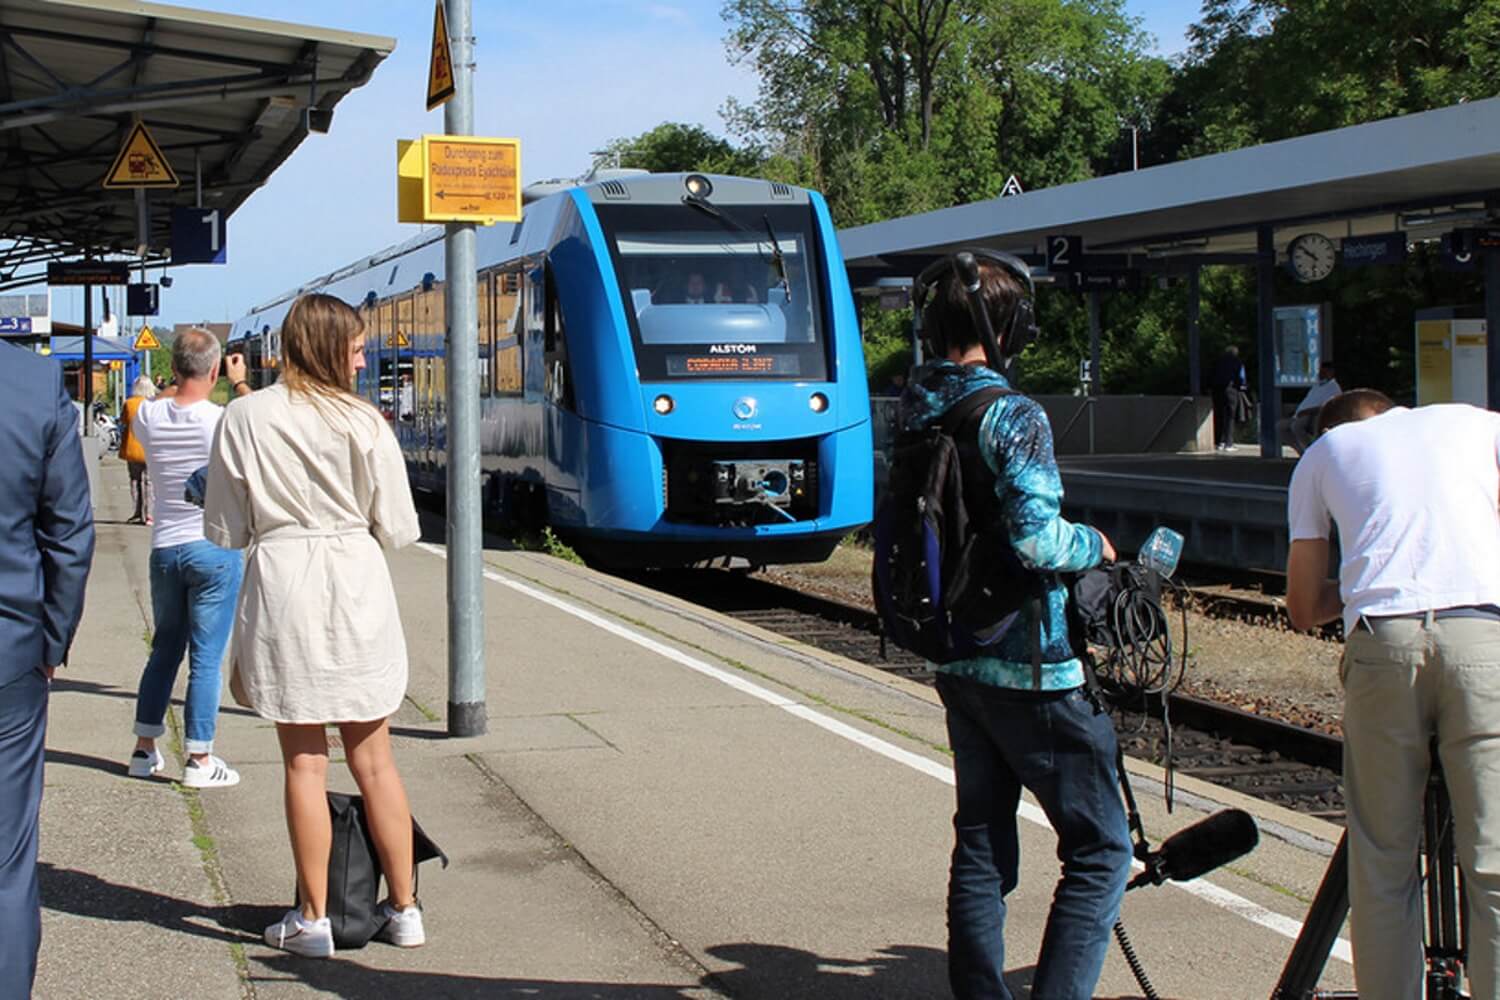 An einem Bahngleis auf dem wartende Menschen stehen fährt ein blauer Zug ein.